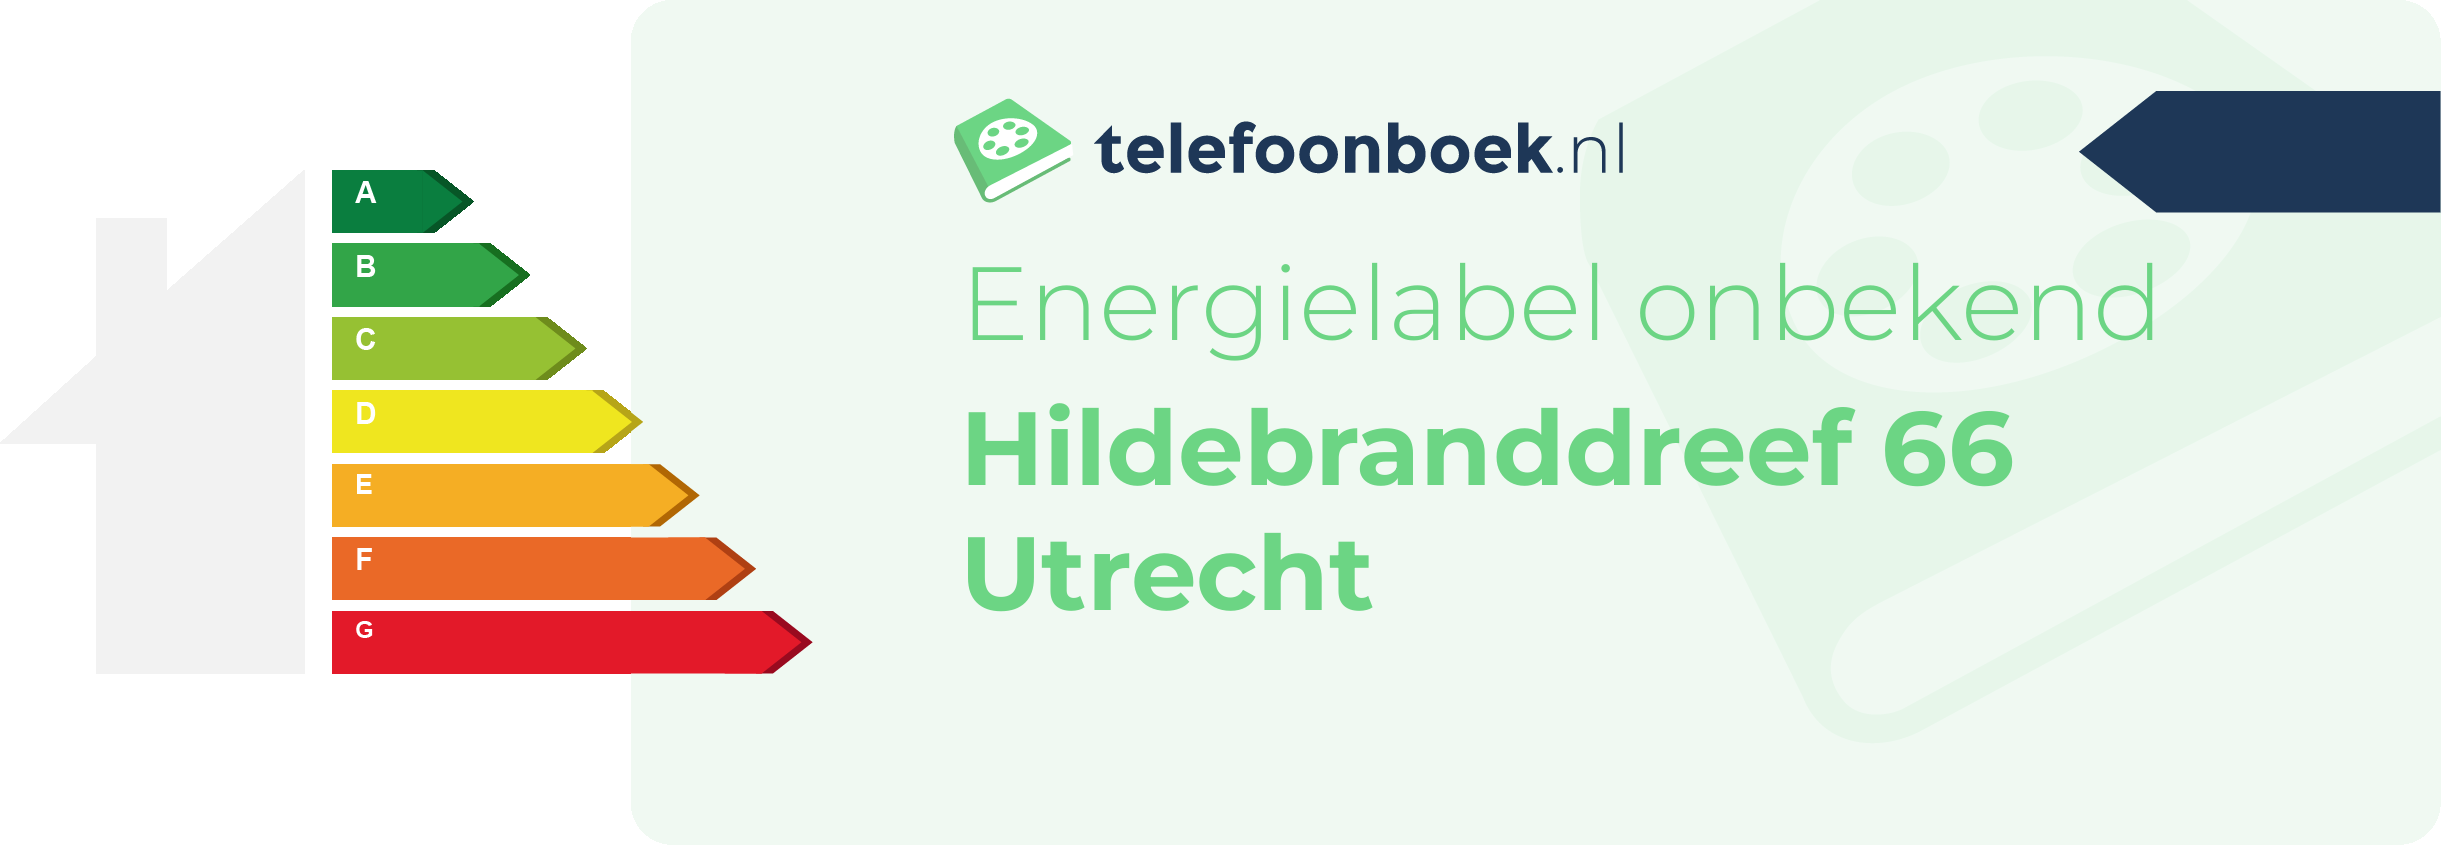 Energielabel Hildebranddreef 66 Utrecht